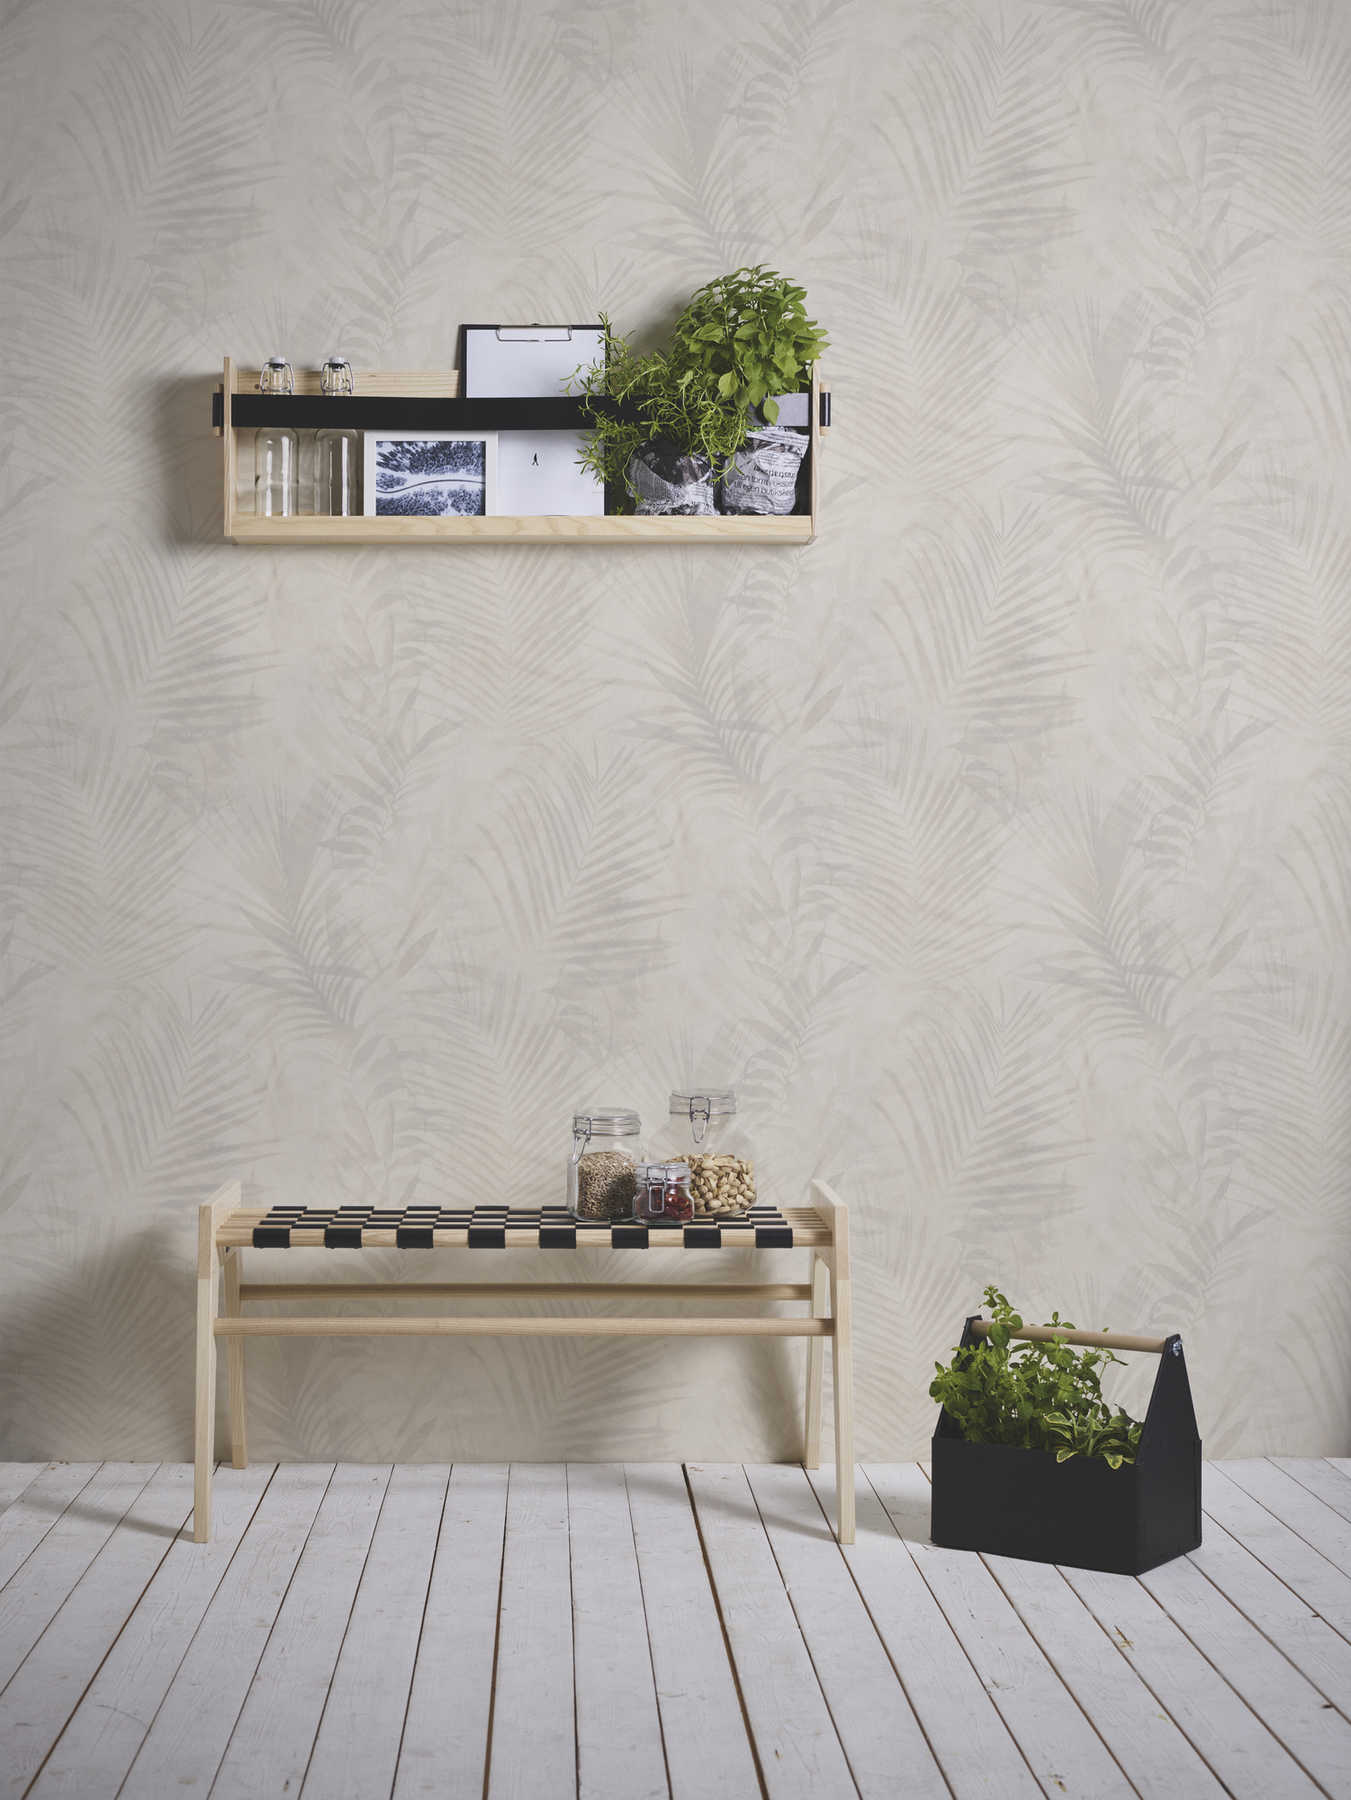             Wallpaper palm tree pattern in linen look - beige, cream, grey
        